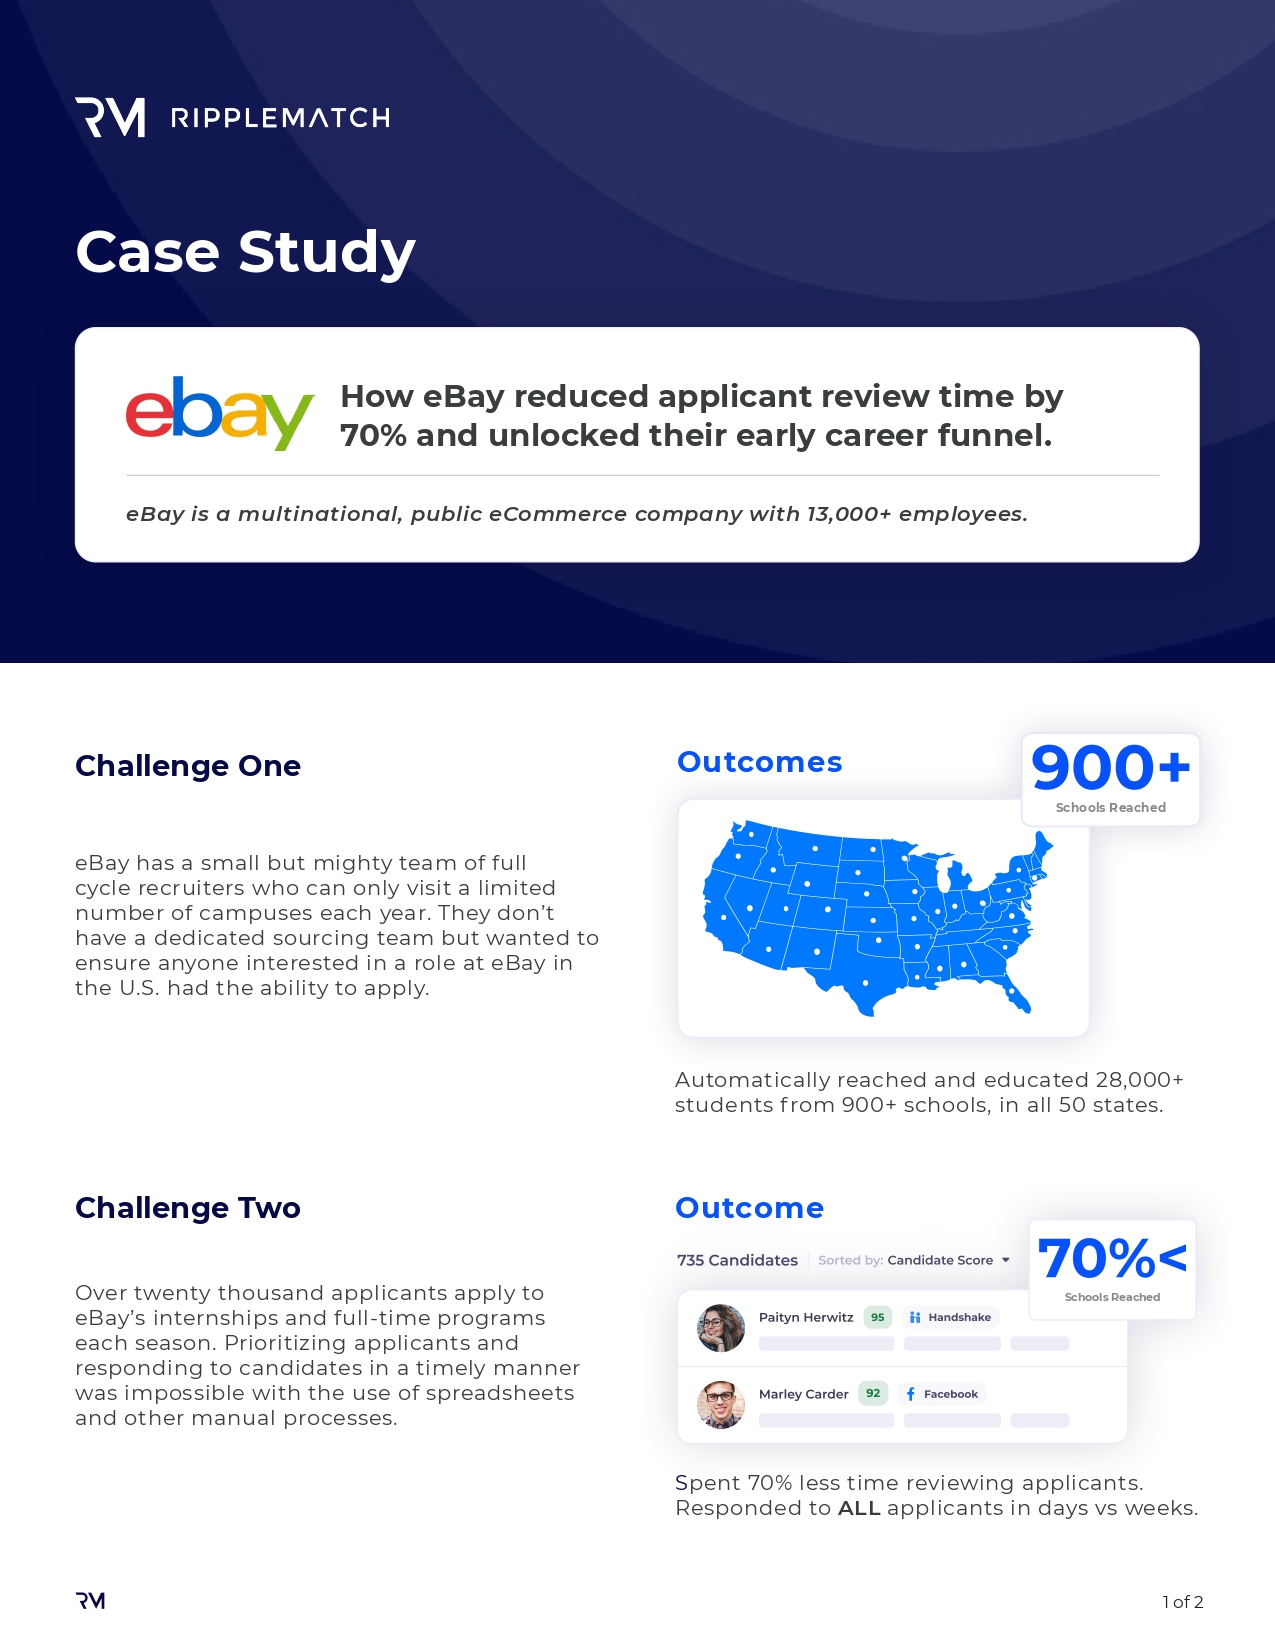 eBay Case Study